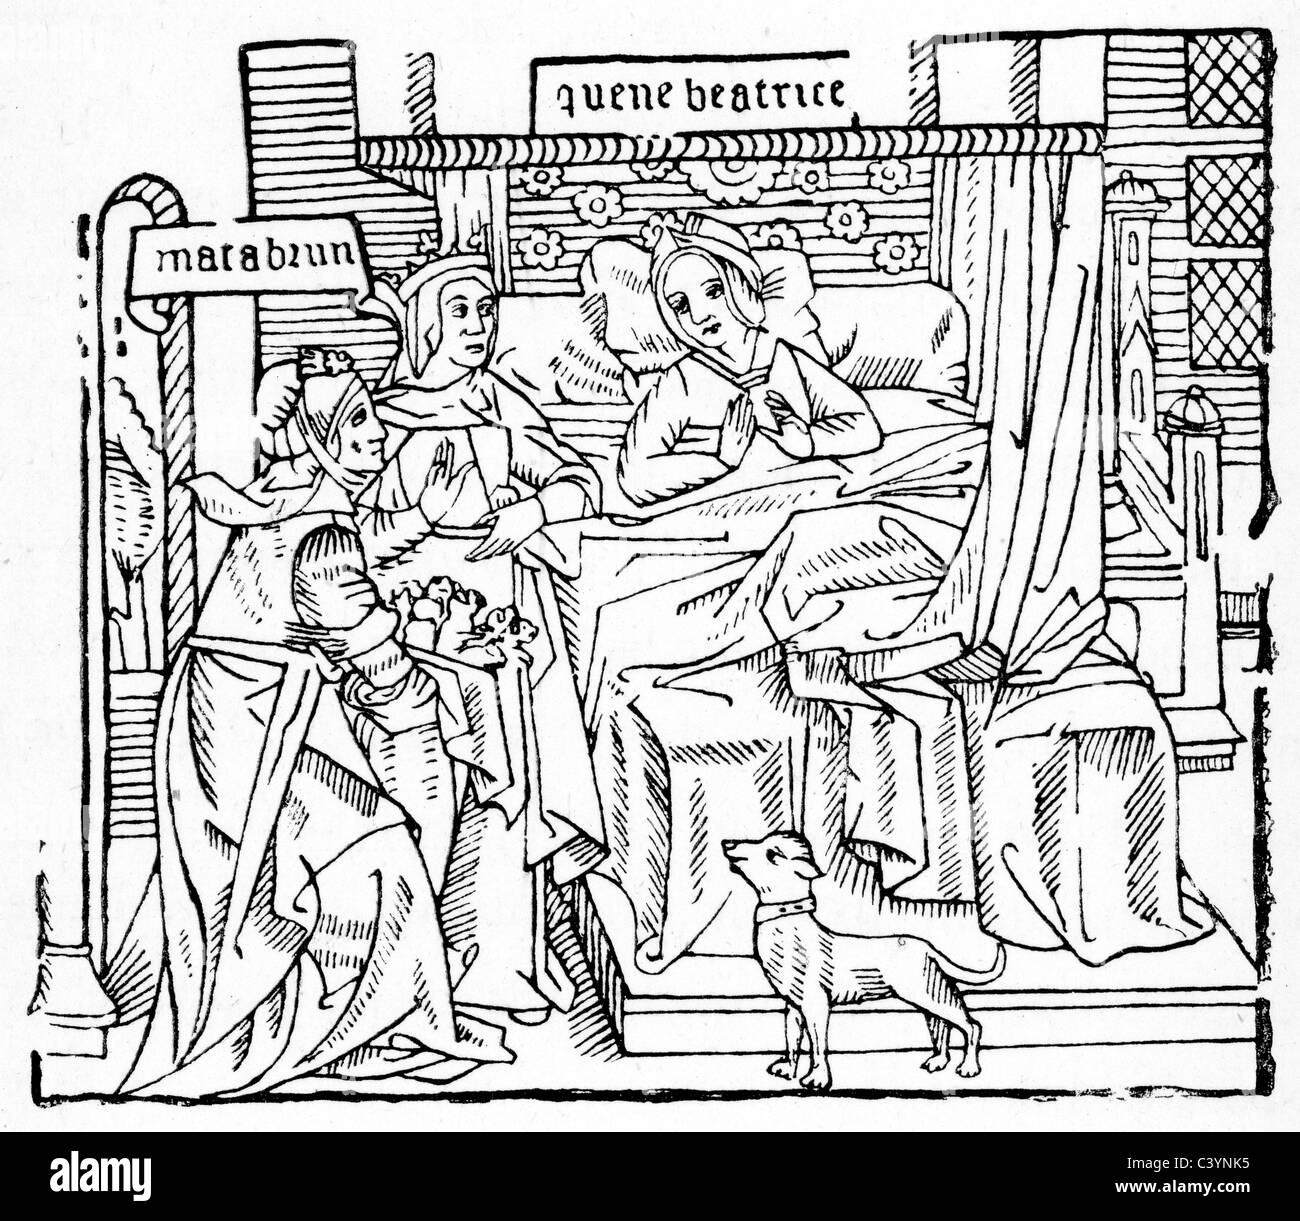 Xilografia medievale dalla storia del cavaliere del cigno. Il tradimento della regina Matabrune Foto Stock